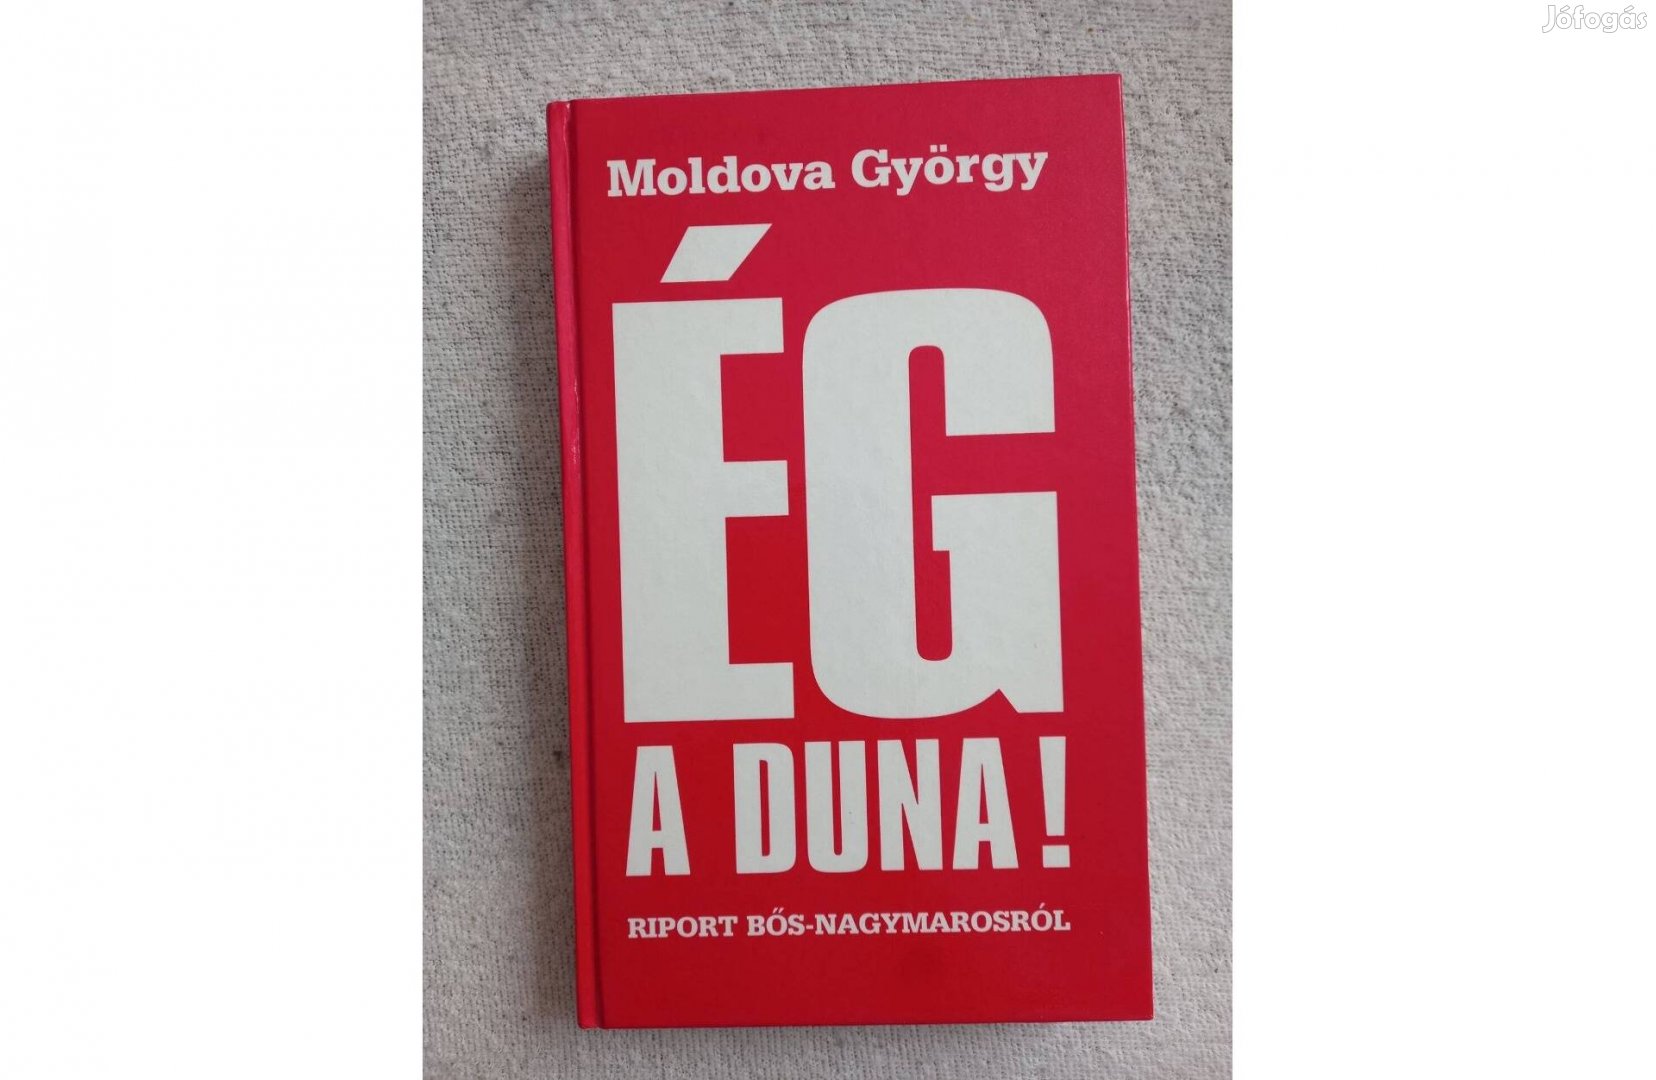 Moldova György: Ég a Duna!